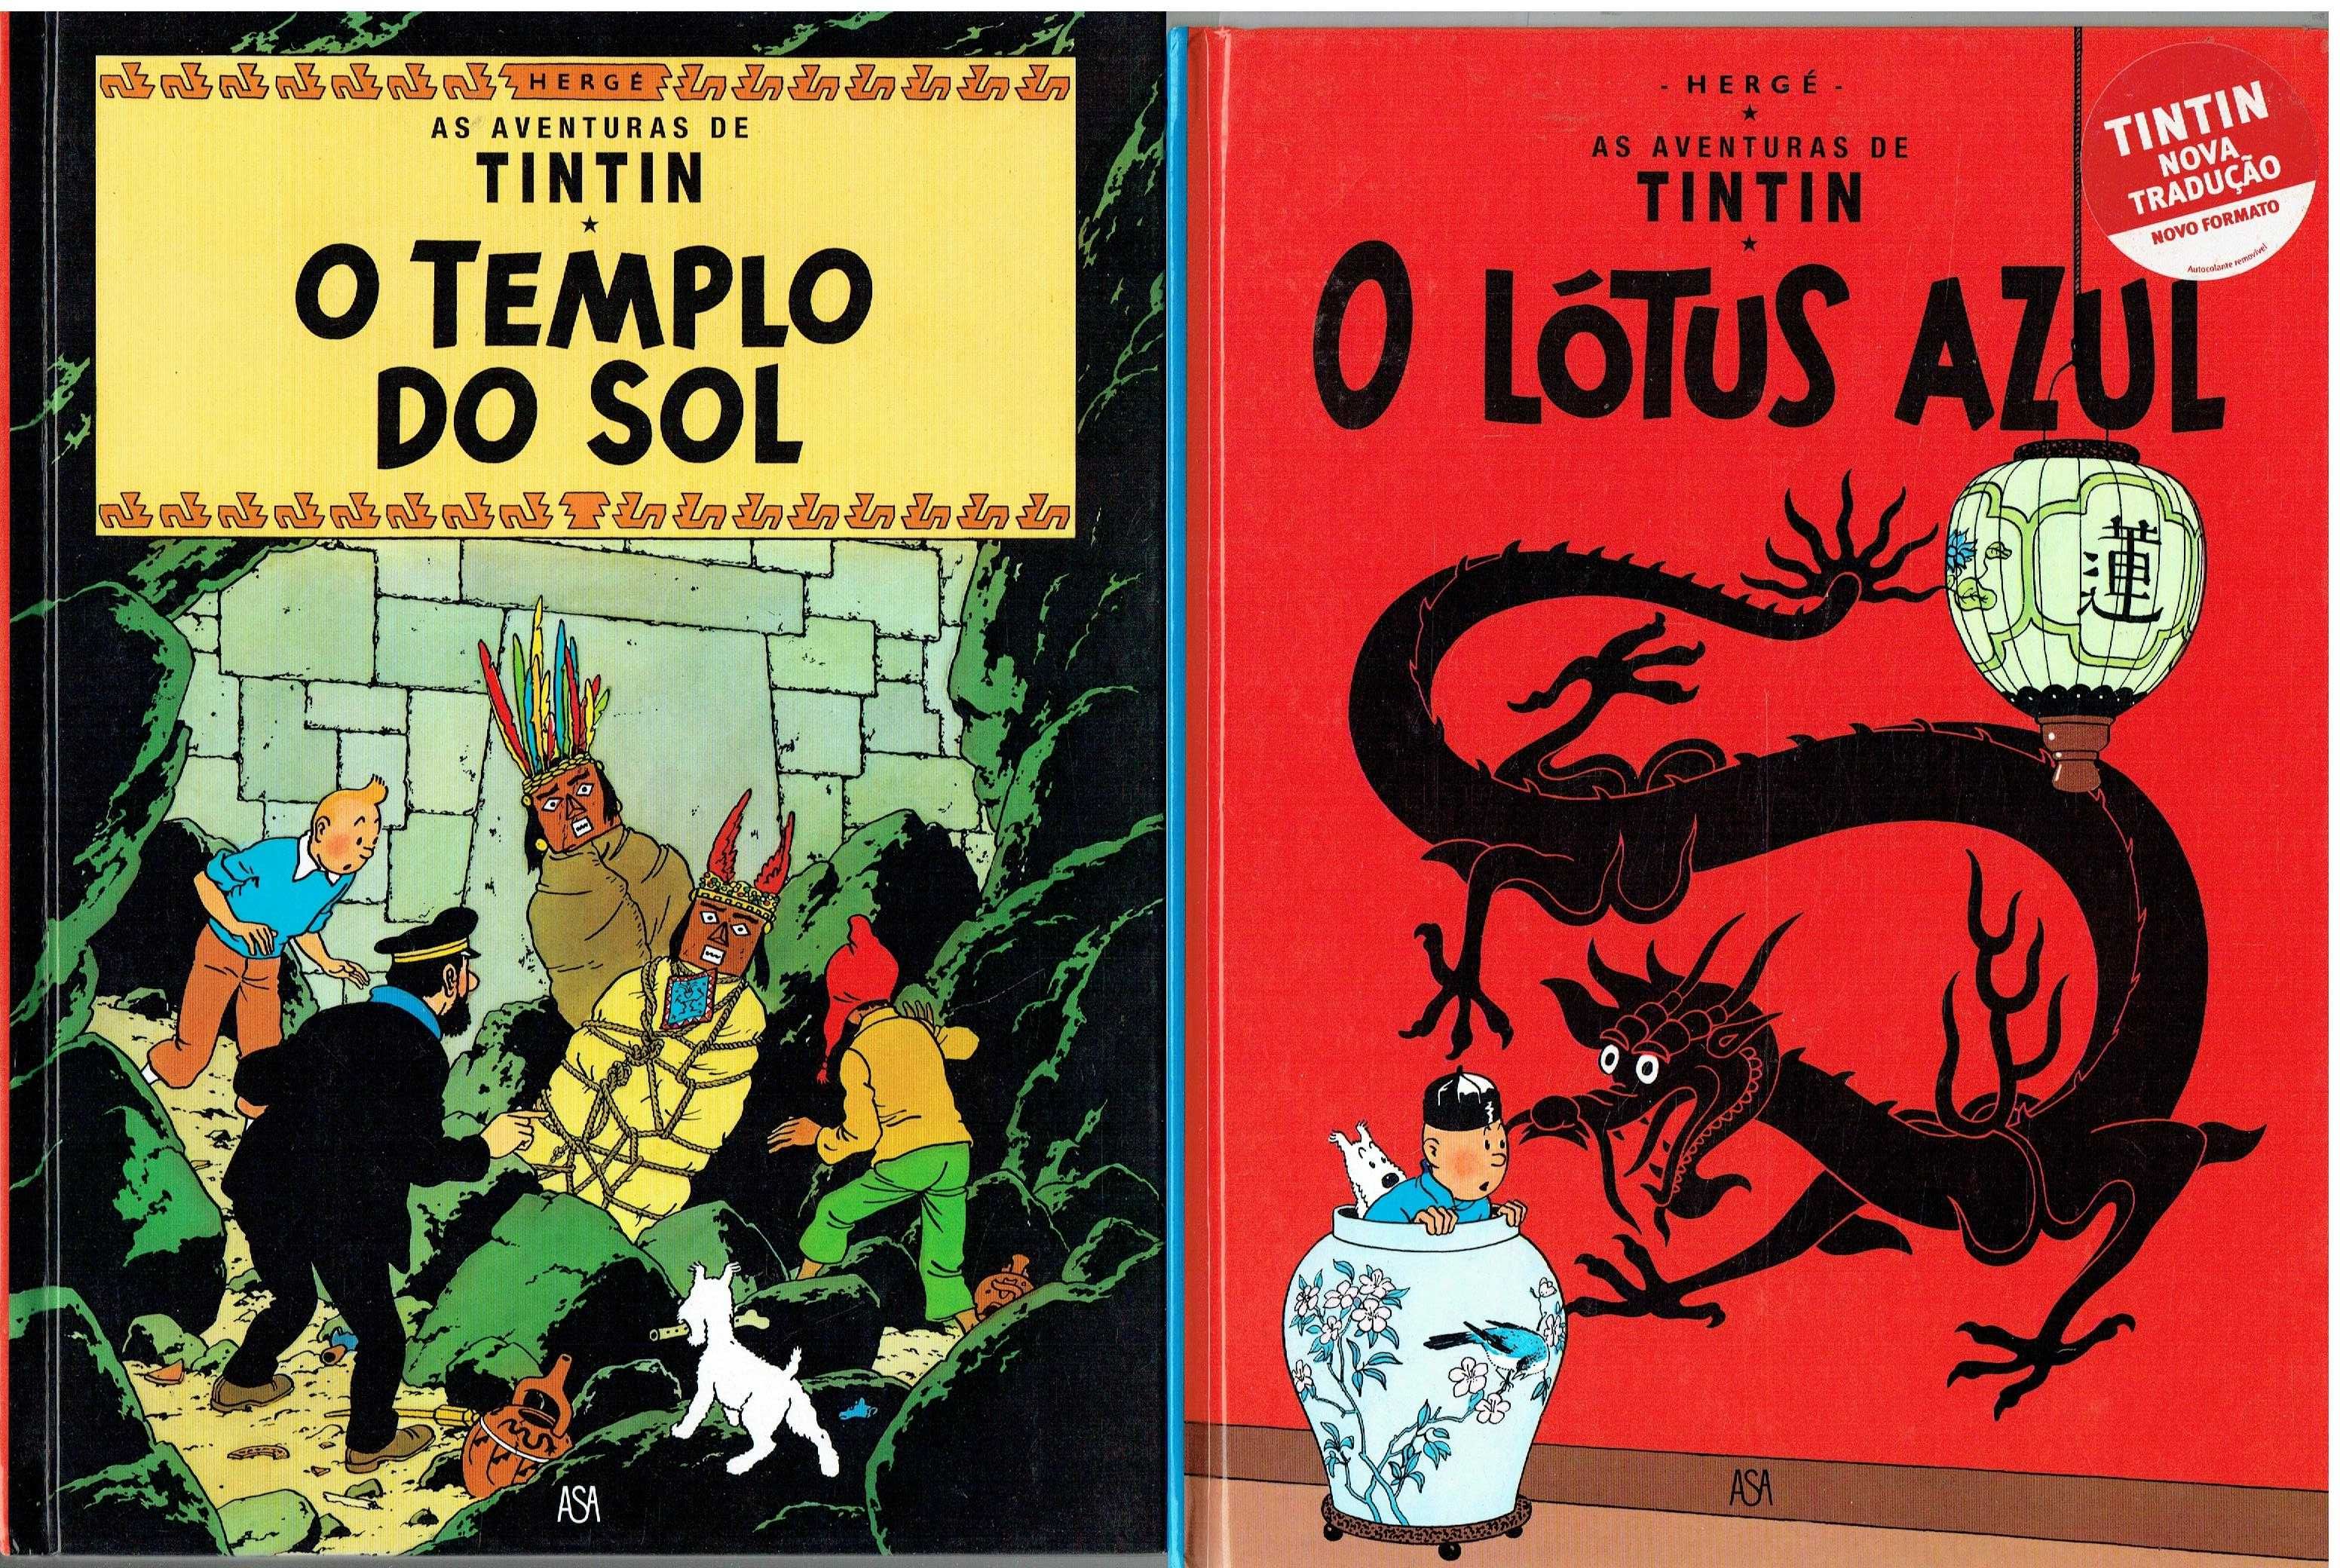 11860

Coleção As Aventuras de Tintim - ASA
de Hergé